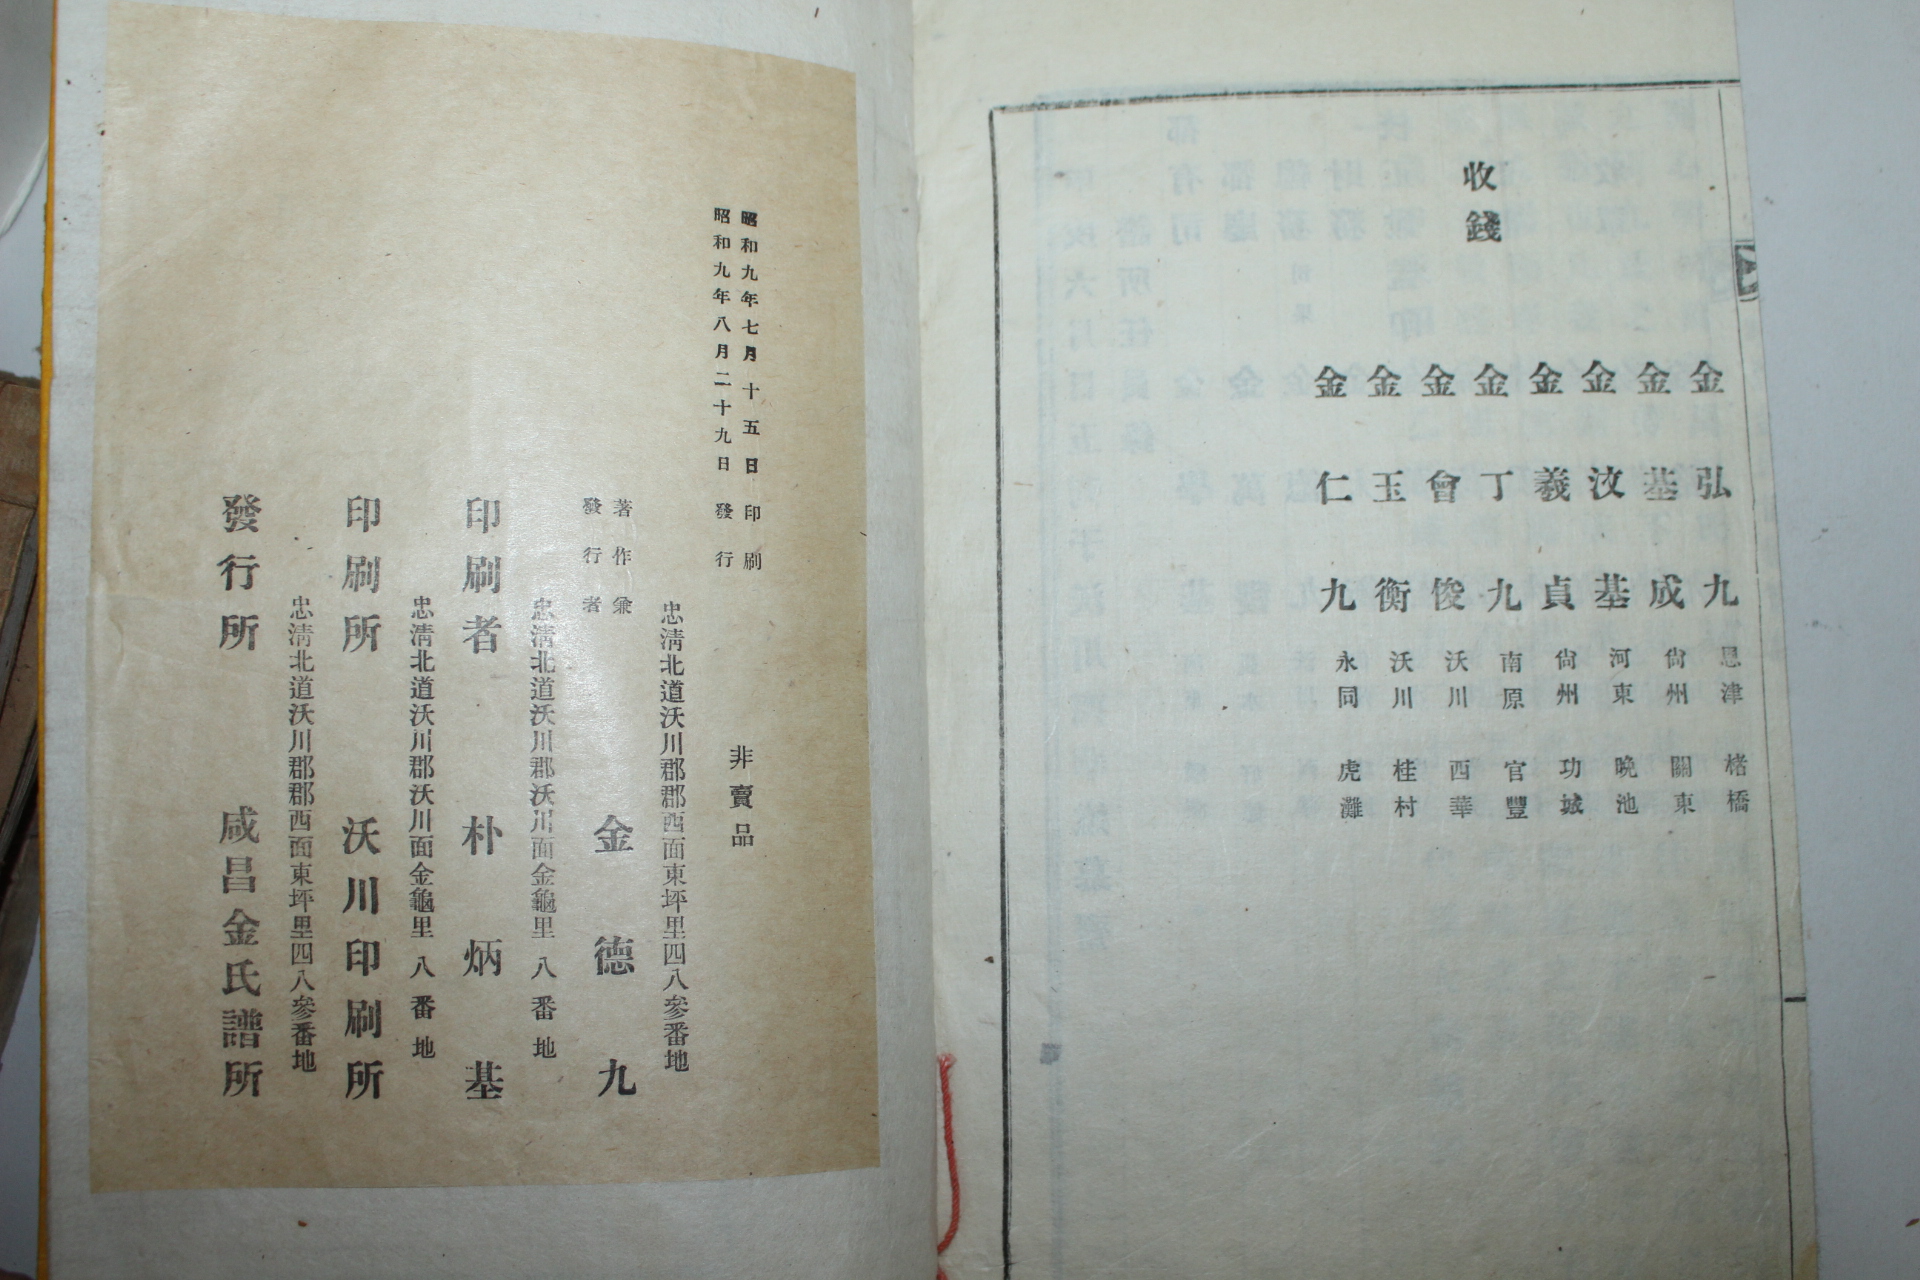 1934년 함창김씨세덕실기(咸昌金氏世德實紀) 1책완질